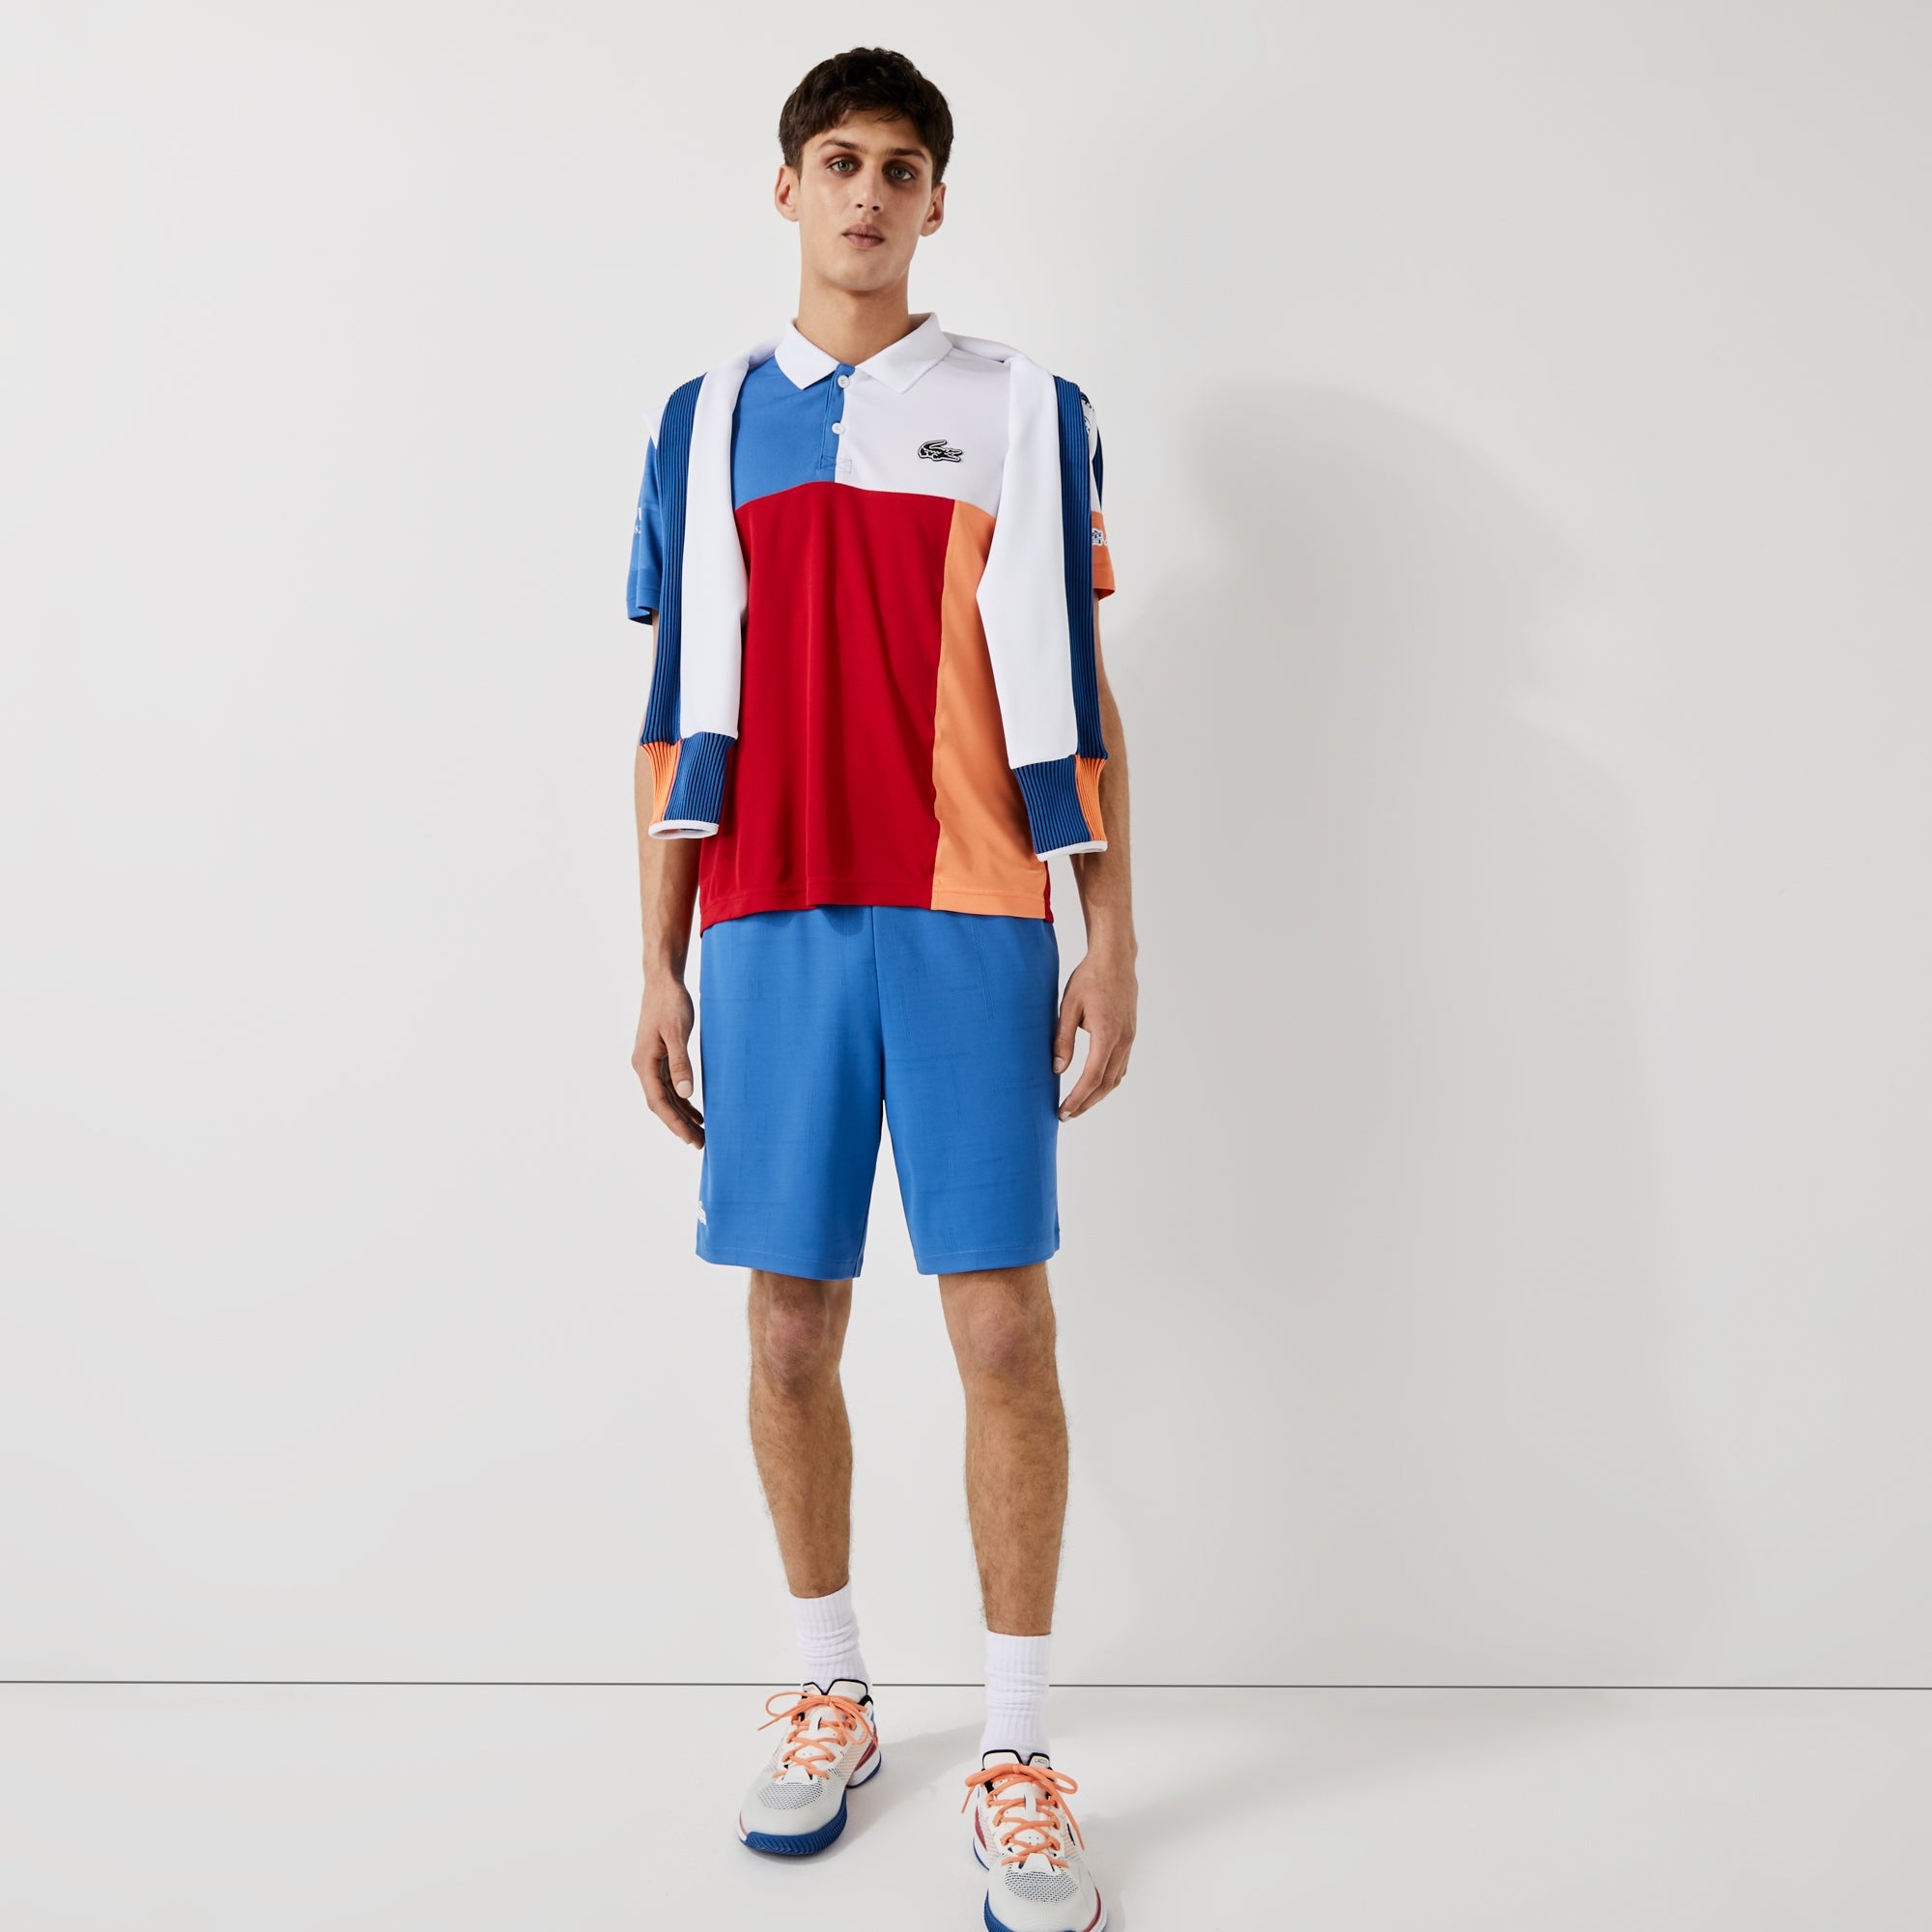 Lacoste Men's Jacquard Tennis Shorts Blue (3)